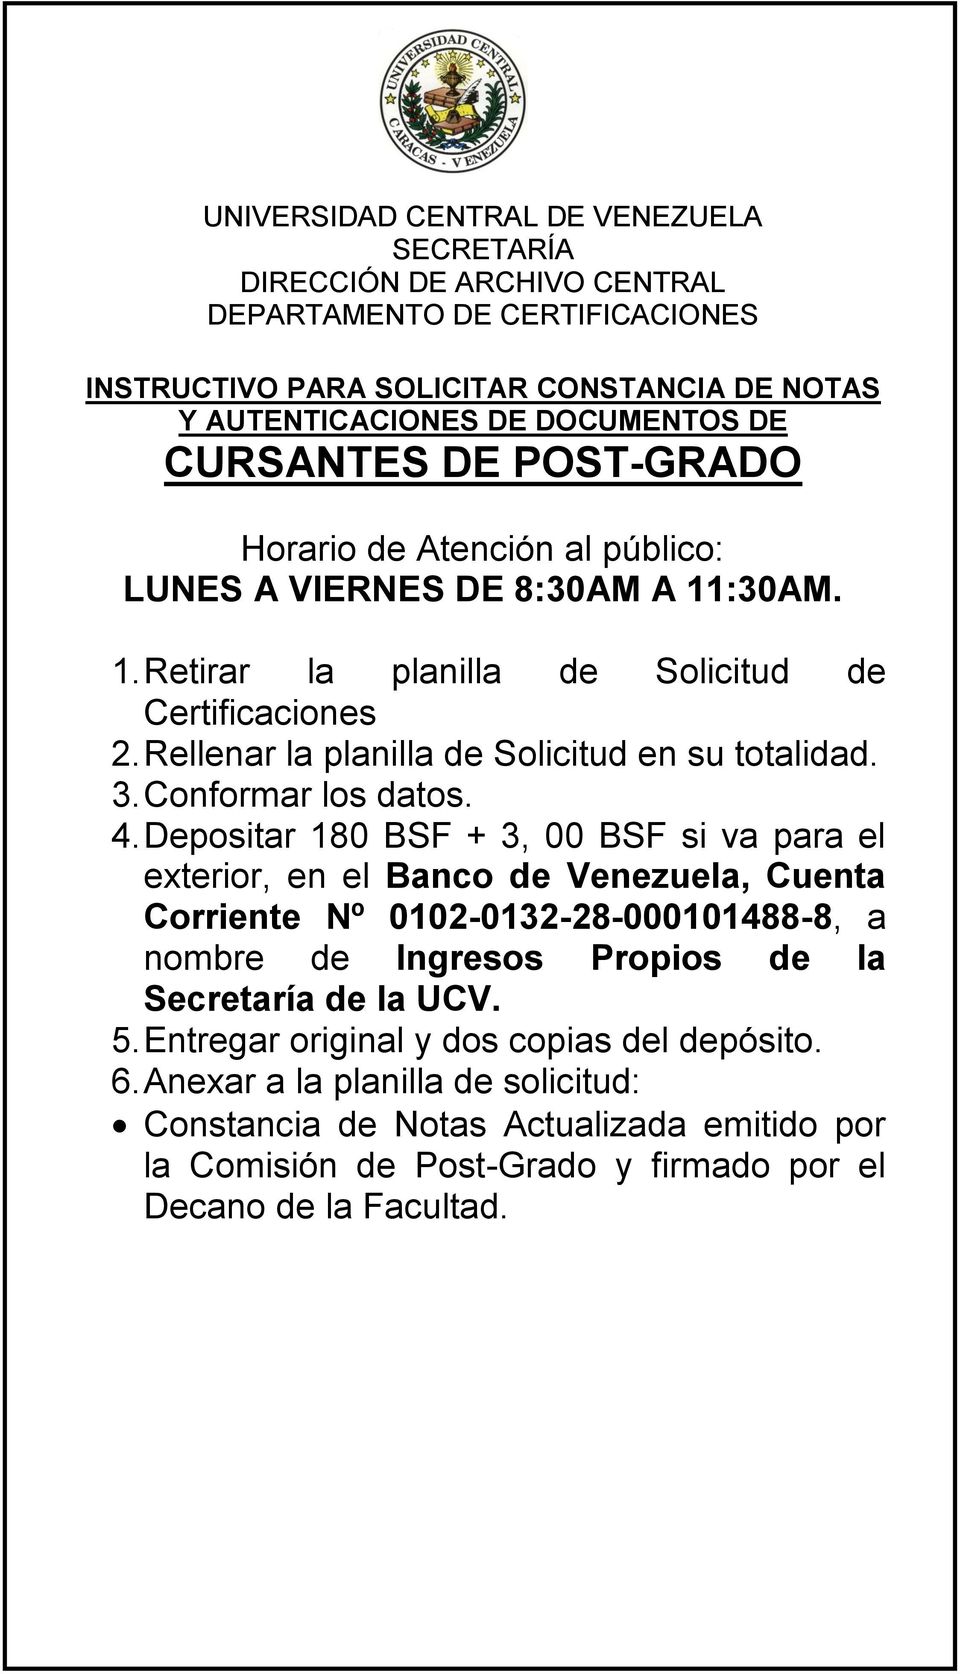 Depositar 180 BSF + 3, 00 BSF si va para el exterior, en el Banco de Venezuela, Cuenta Corriente Nº 0102-0132-28-000101488-8, a nombre de Ingresos Propios